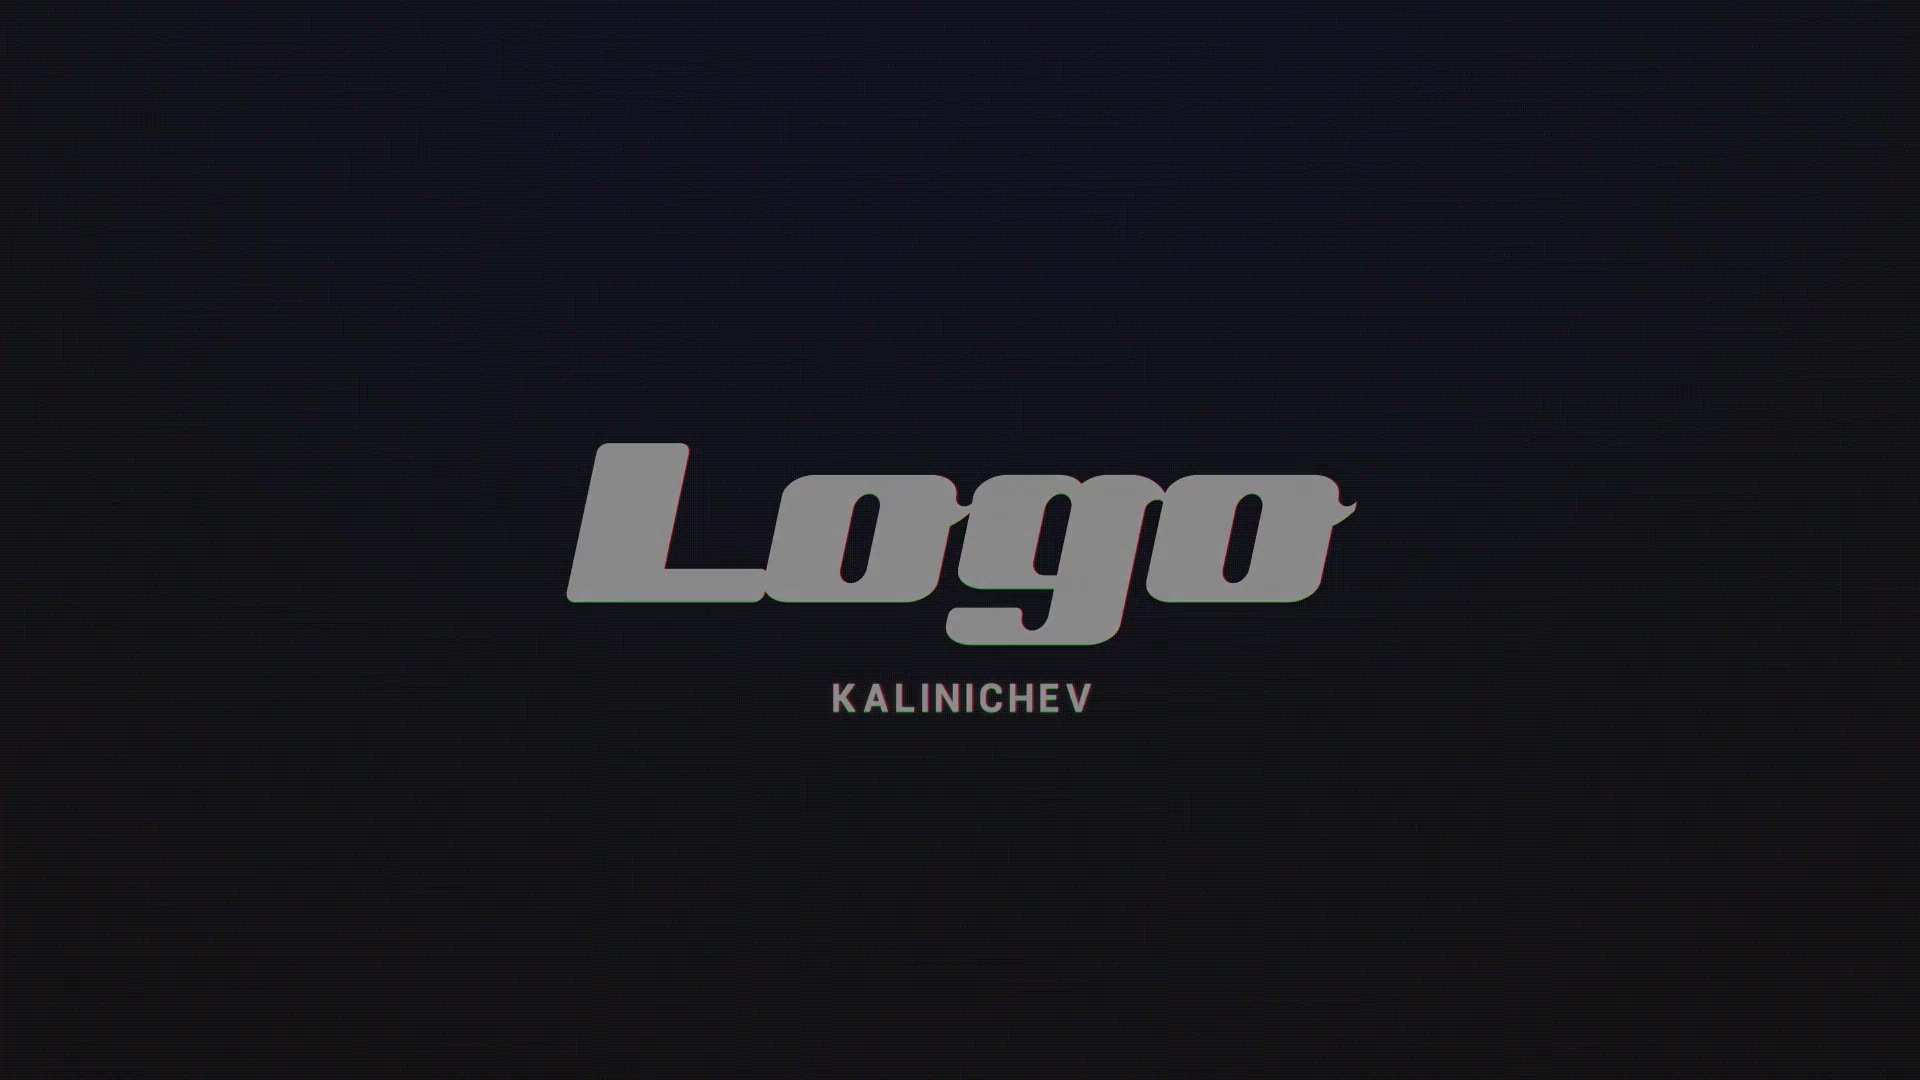 Fast Glitch RGB Logo Reveal Premiere Pro Videohive 32318622 Premiere Pro Image 4